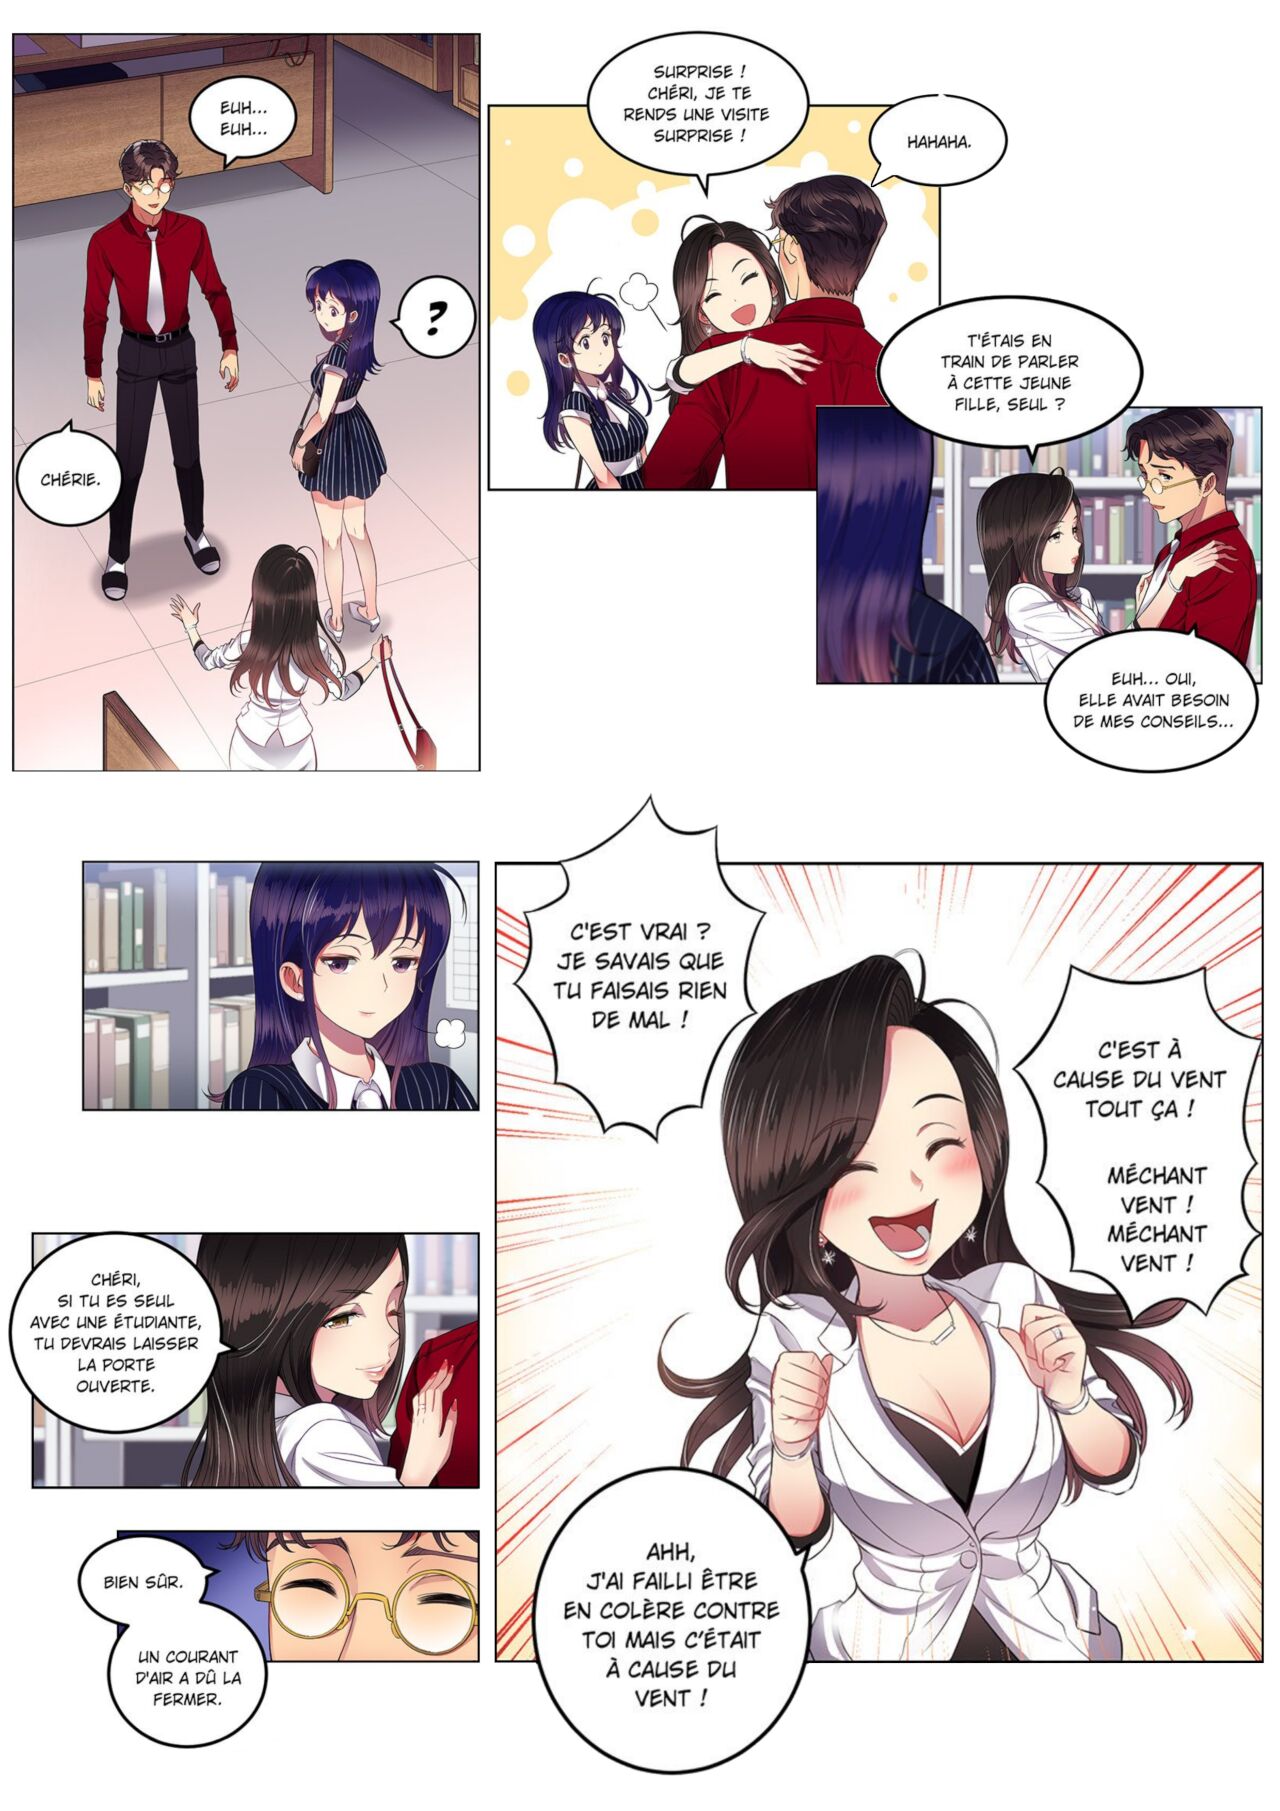 La double vie de Yuri numero d'image 67